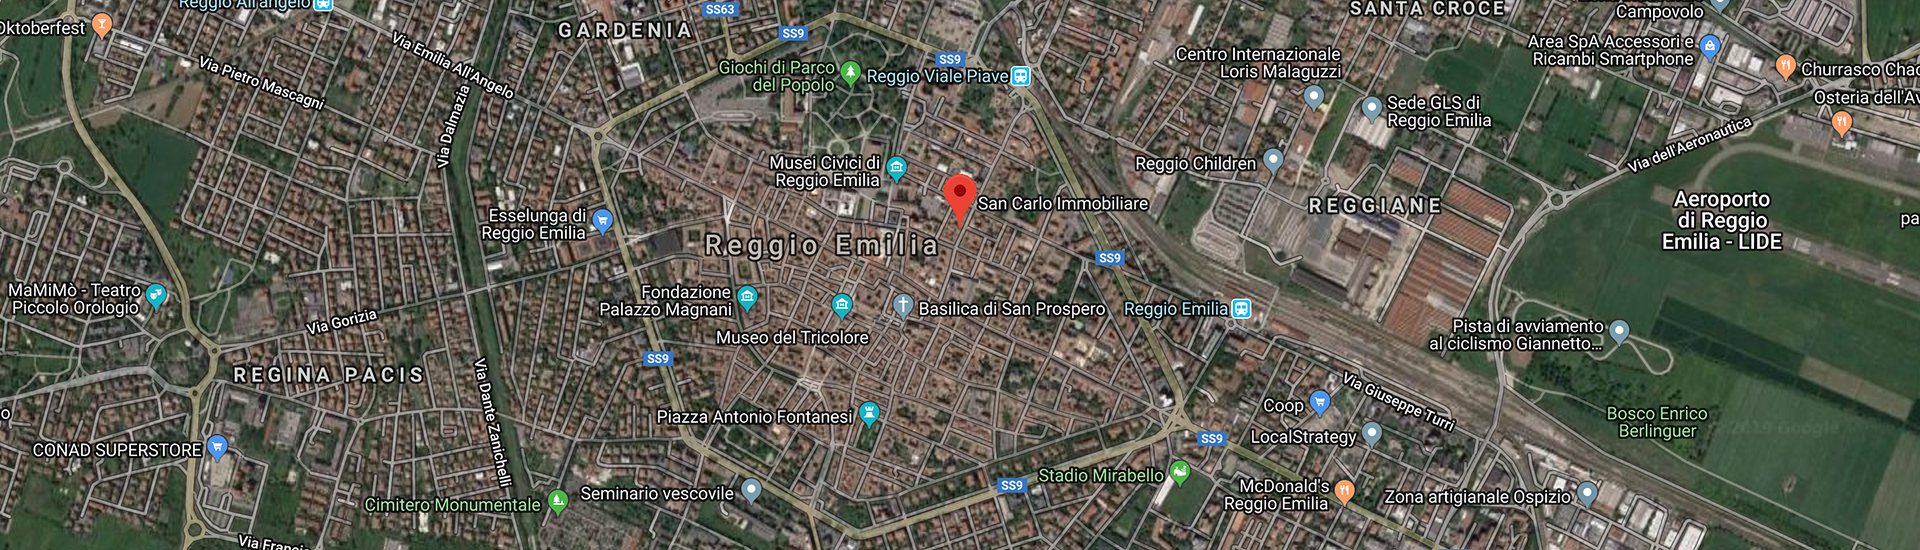 San Carlo Immobiliare Agenzia Immobiliare Reggio Emilia